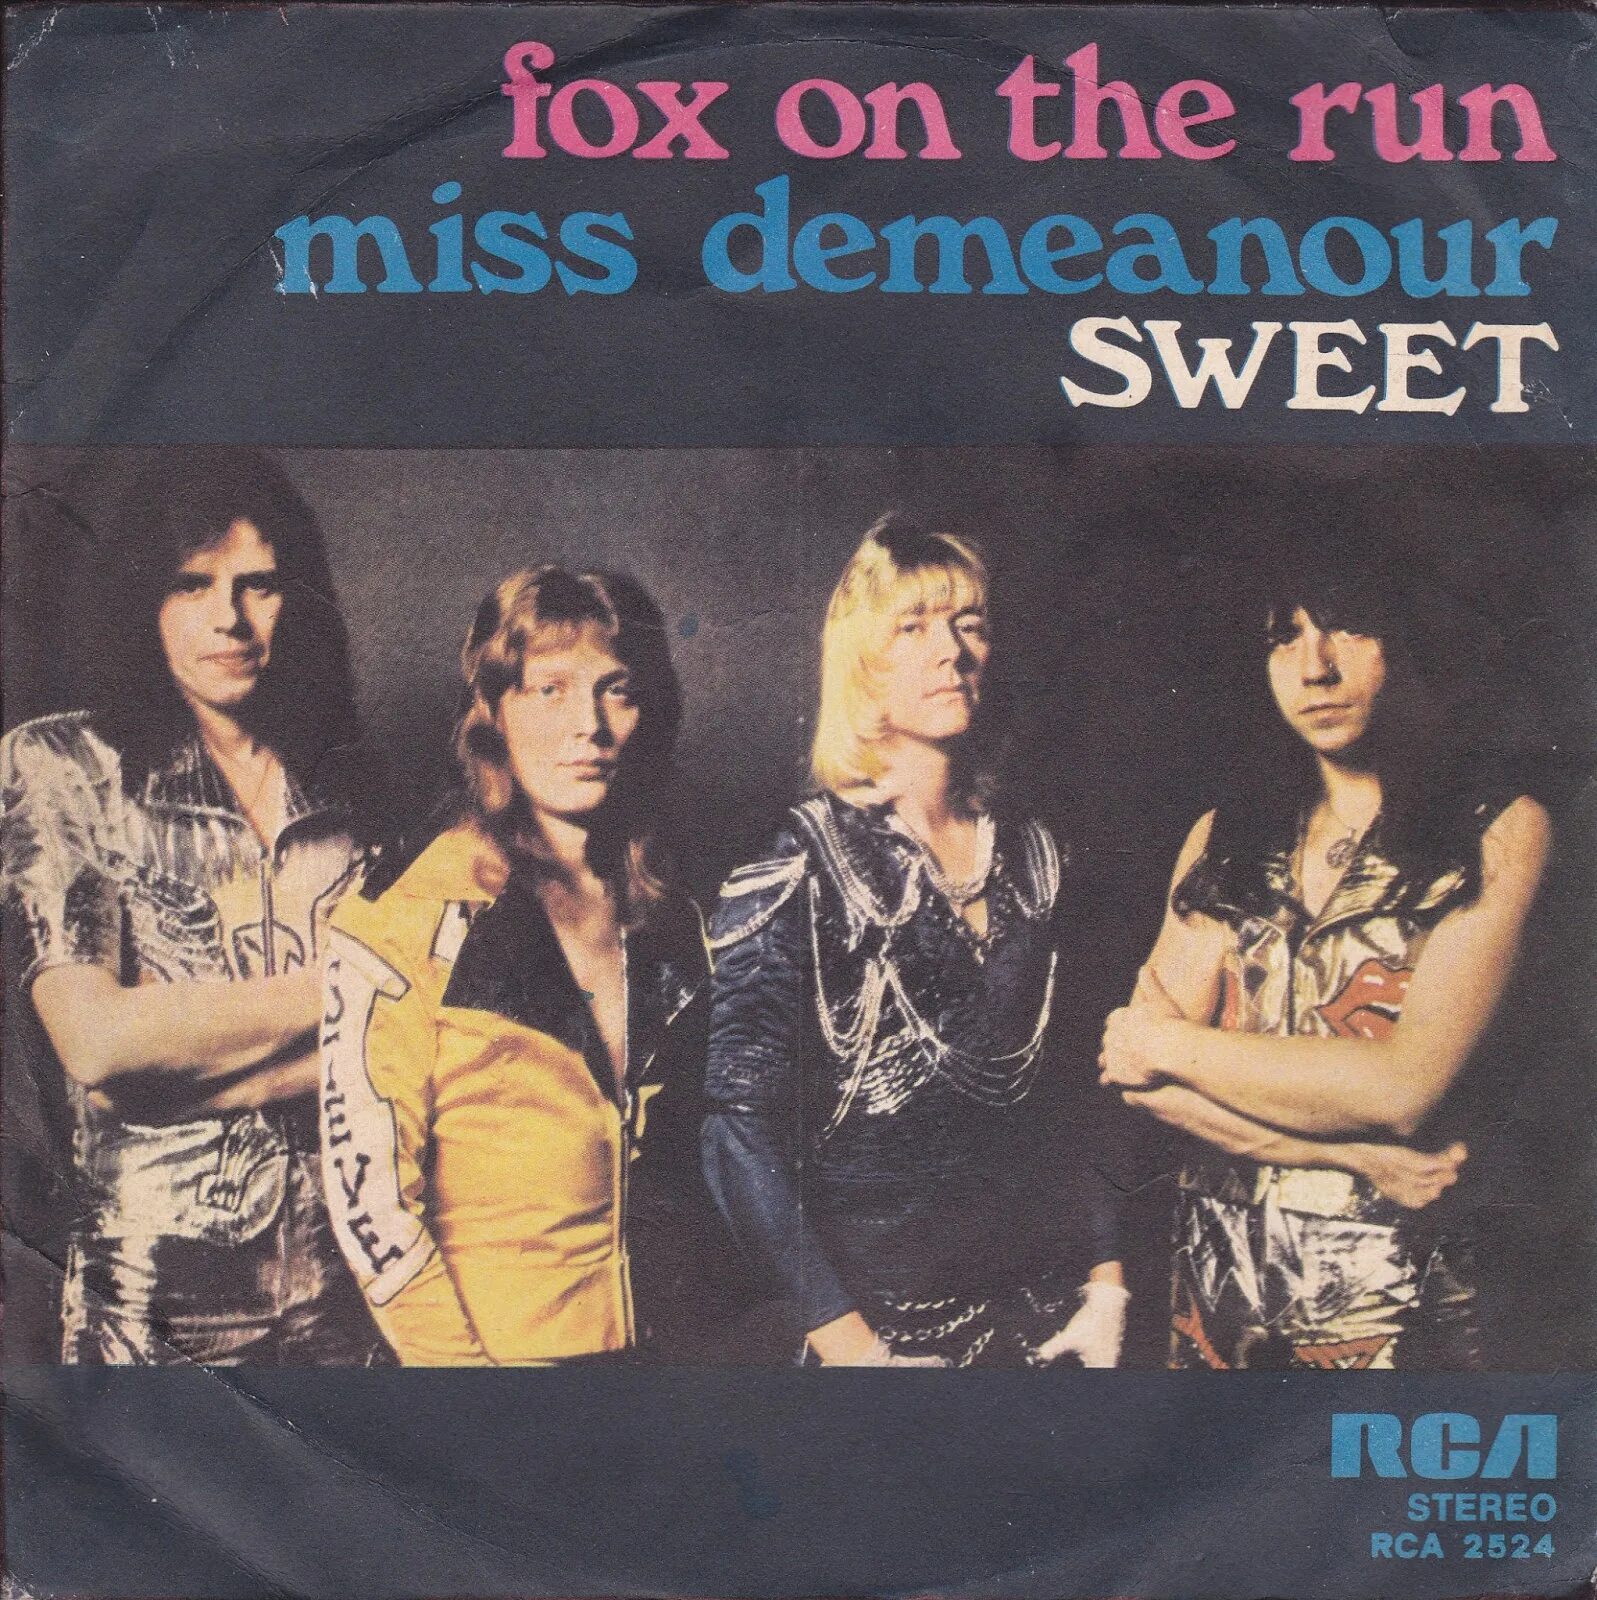 Fox on the run. Fox on the Run-1975 Sweet. Fox on the Run группы the Sweet.. Sweet. Группа Sweet альбомы.